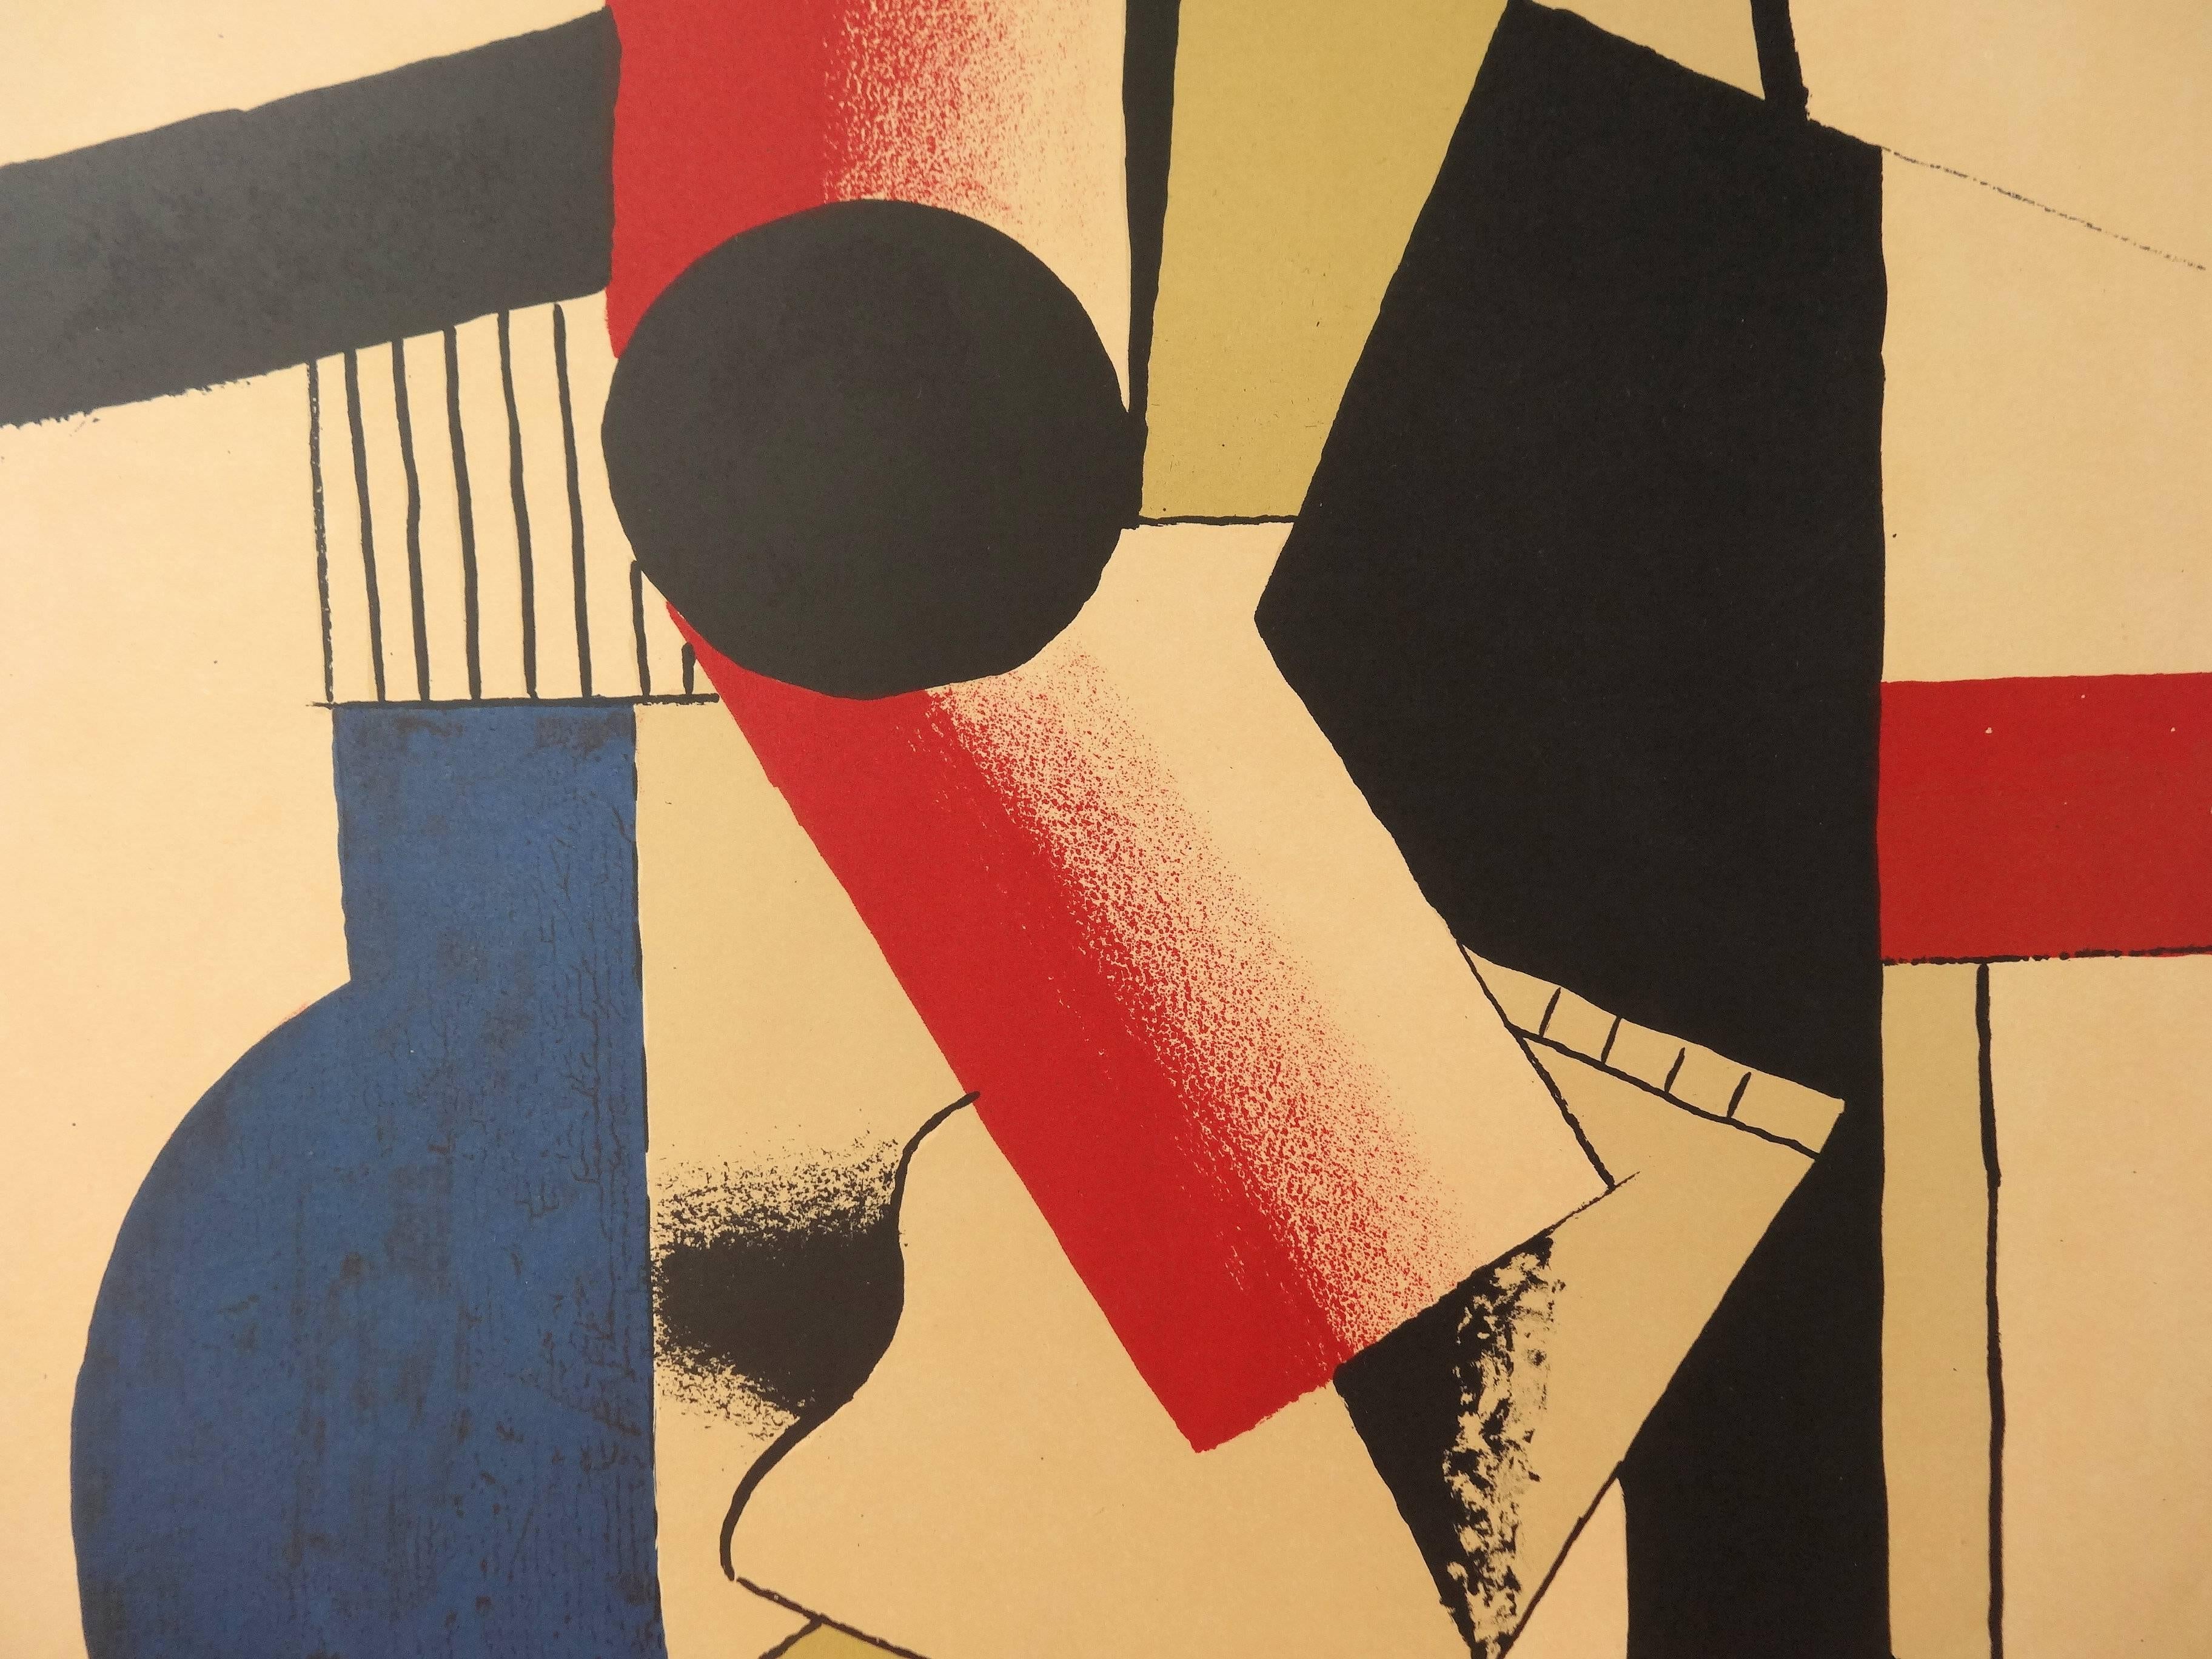 Fernand LÉGER (1881 - 1955)
Guitare cubiste

Lithographie d'après une aquarelle (imprimée dans l'Atelier Mourlot)
Signature imprimée dans la plaque
Sur papier 69 x 42 cm (c. 28 x 17 inch)

Information : Affiche pour l'exposition 